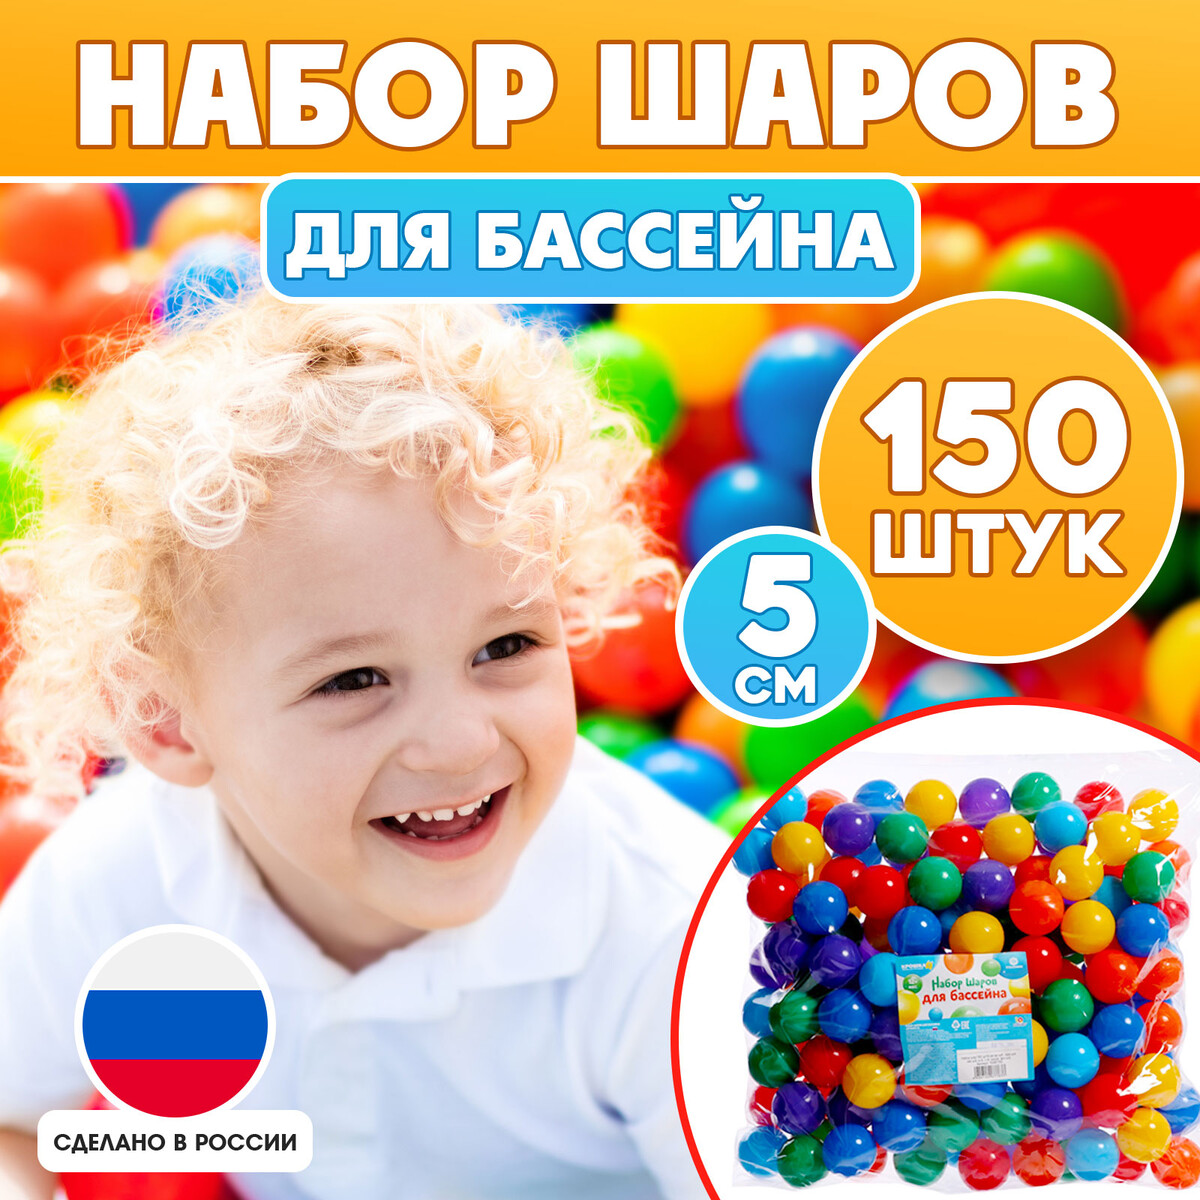 Набор шариков для бассейна, 150 шт, диаметр — 5 см, разноцветные детский сухой бассейн romana airpool max дмф мк 02 54 02 голубой без шариков